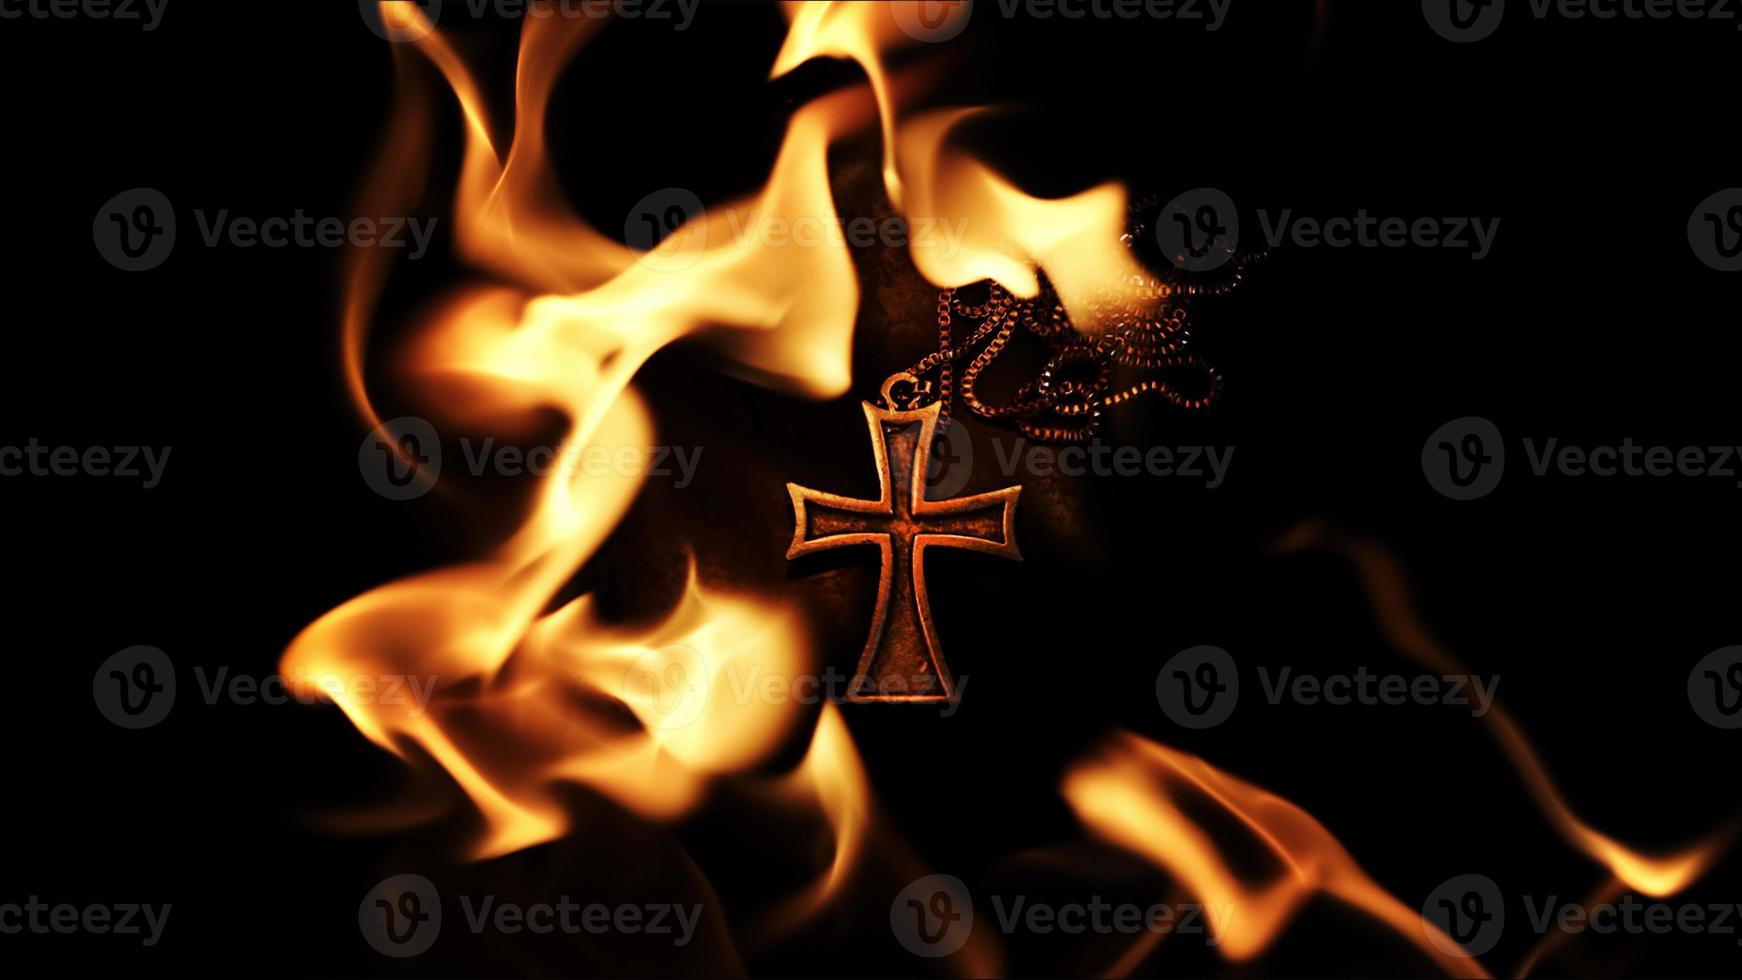 símbolo cristiano cruz en llamas foto